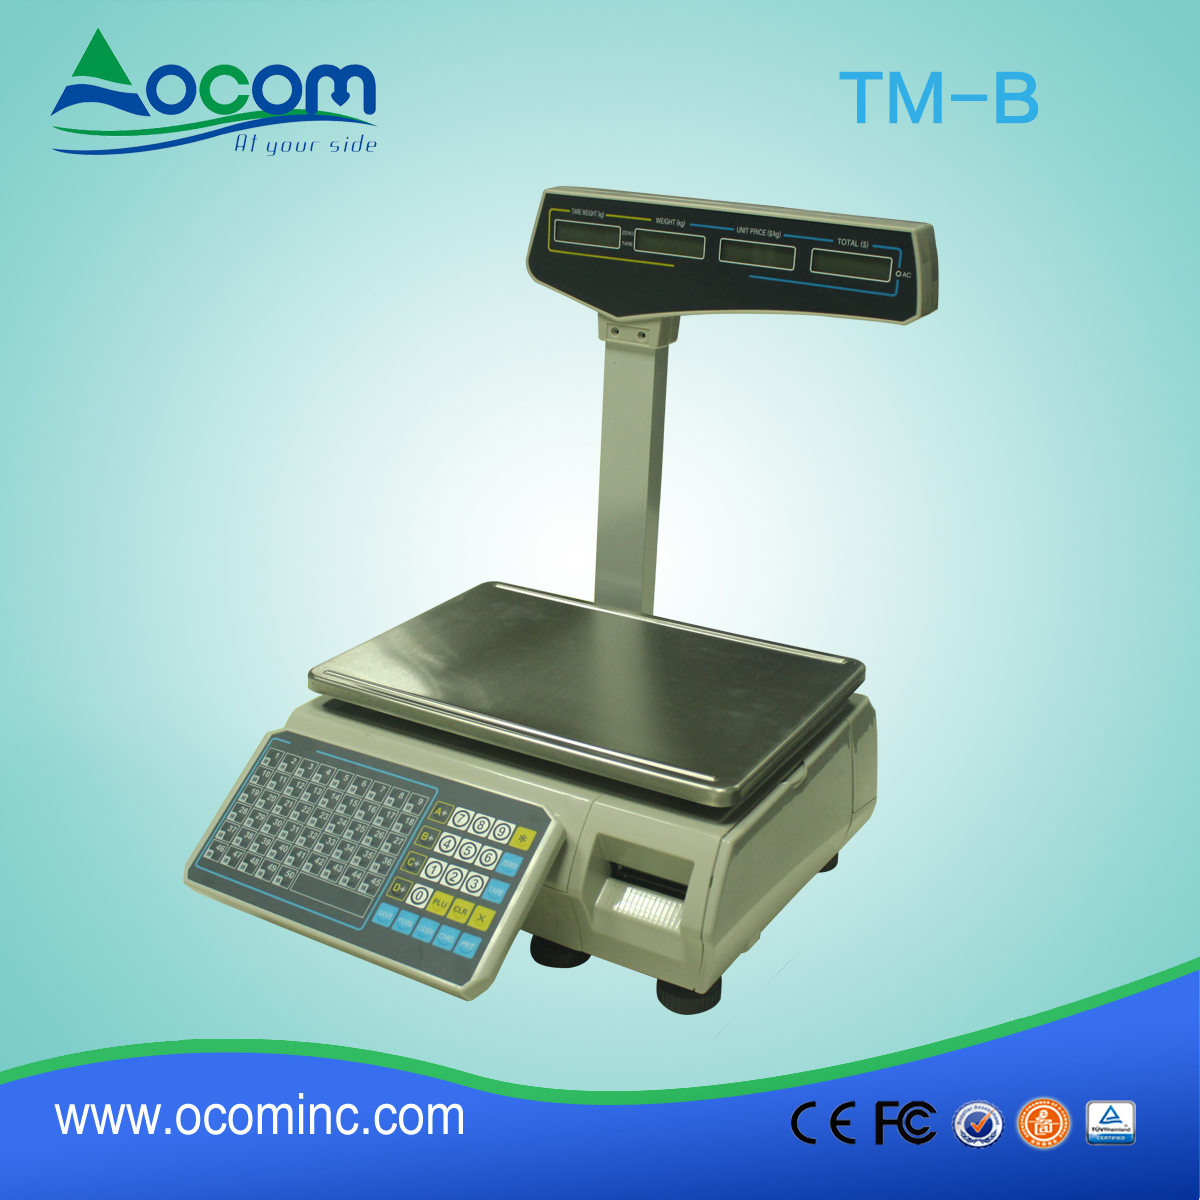 (tm-b)中国制造低成本热条码印刷秤